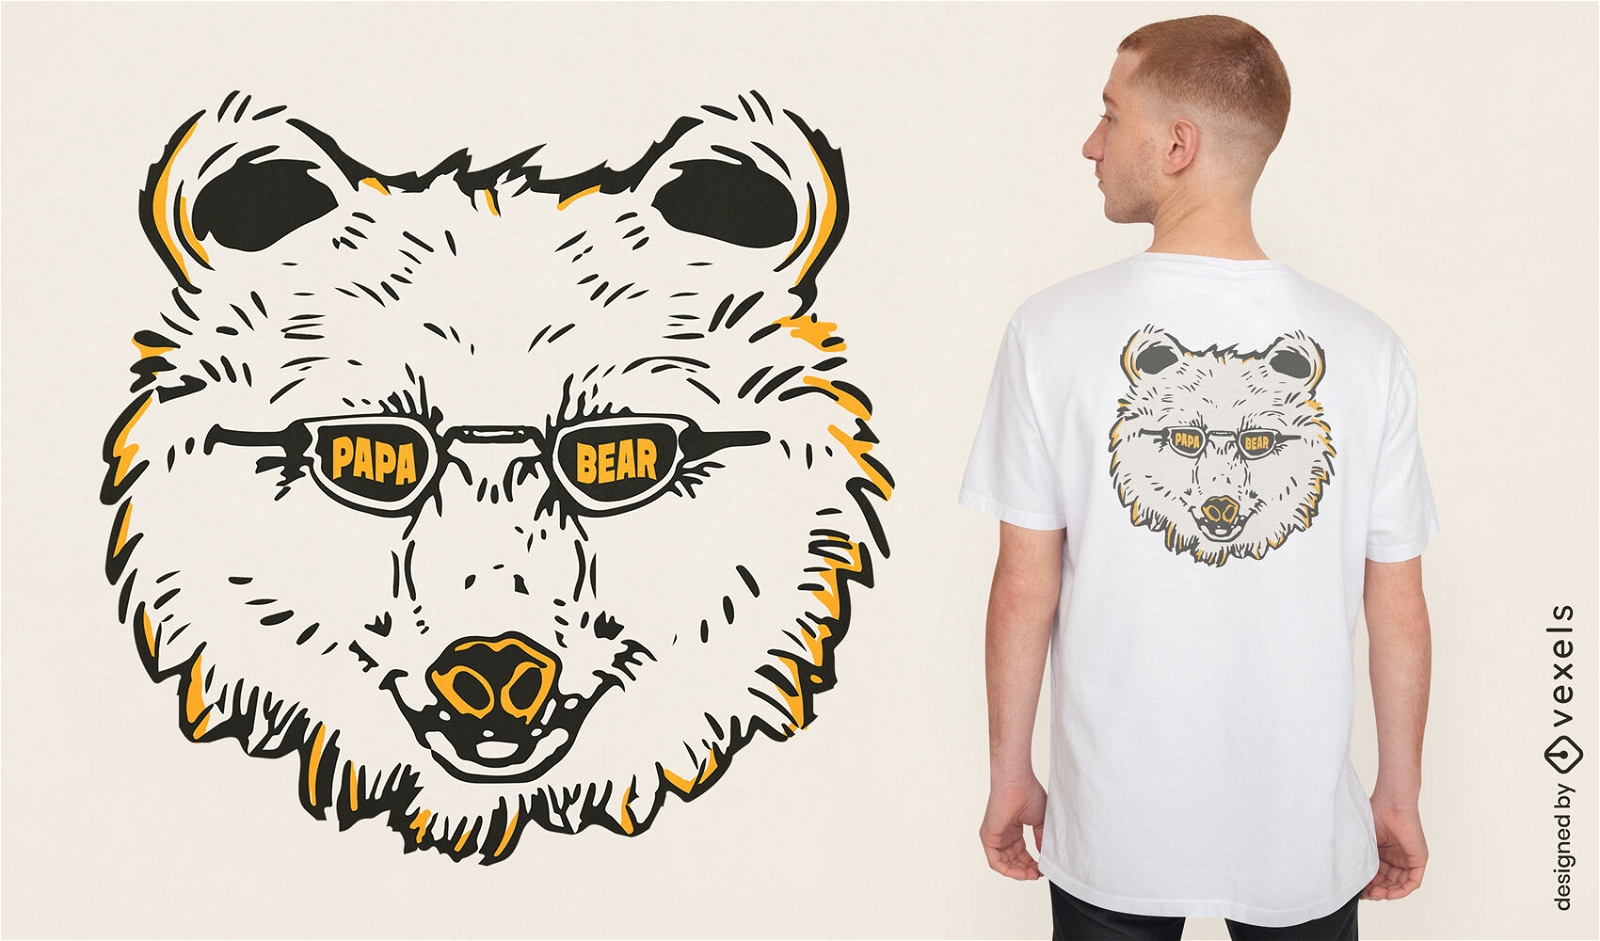 Genial diseño de camiseta de papá oso con gafas de sol.